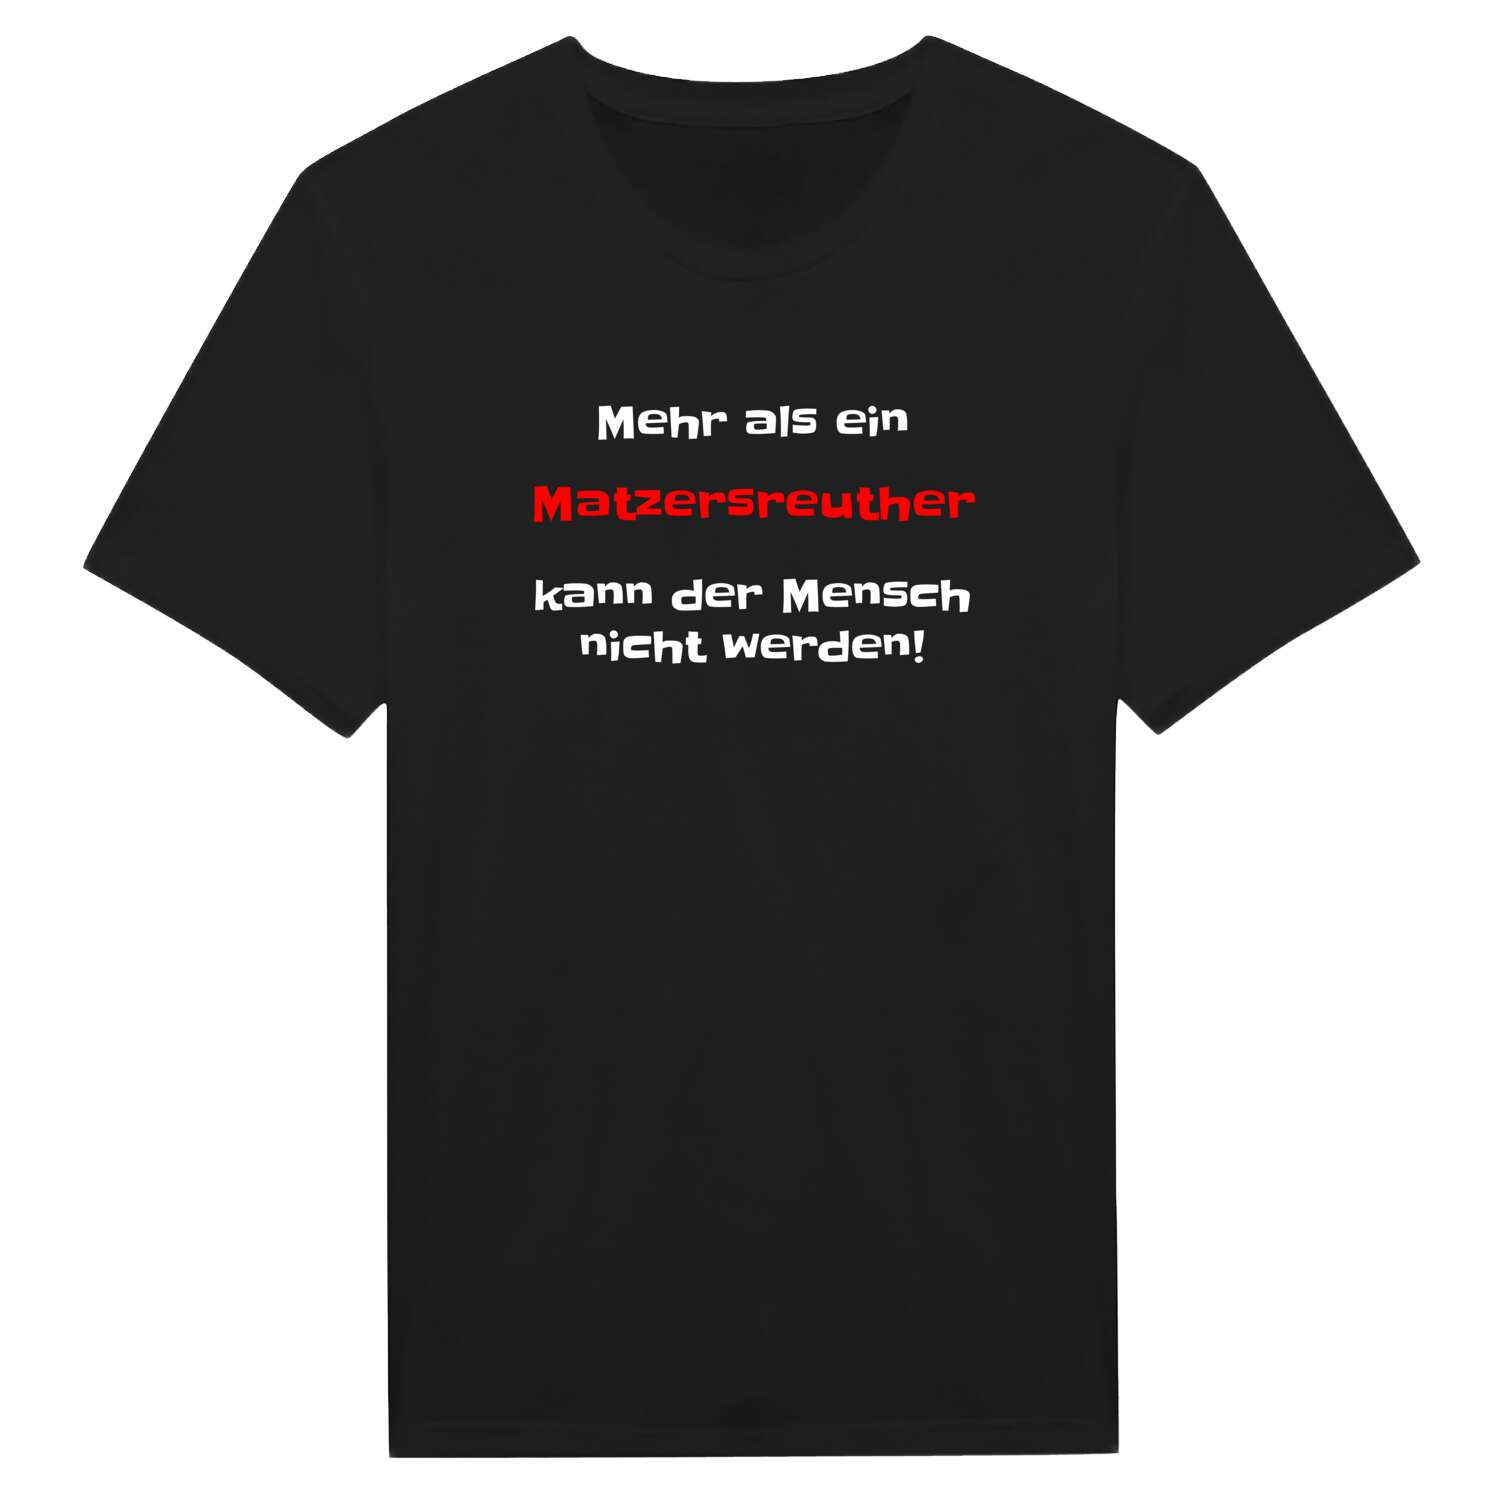 Matzersreuth T-Shirt »Mehr als ein«